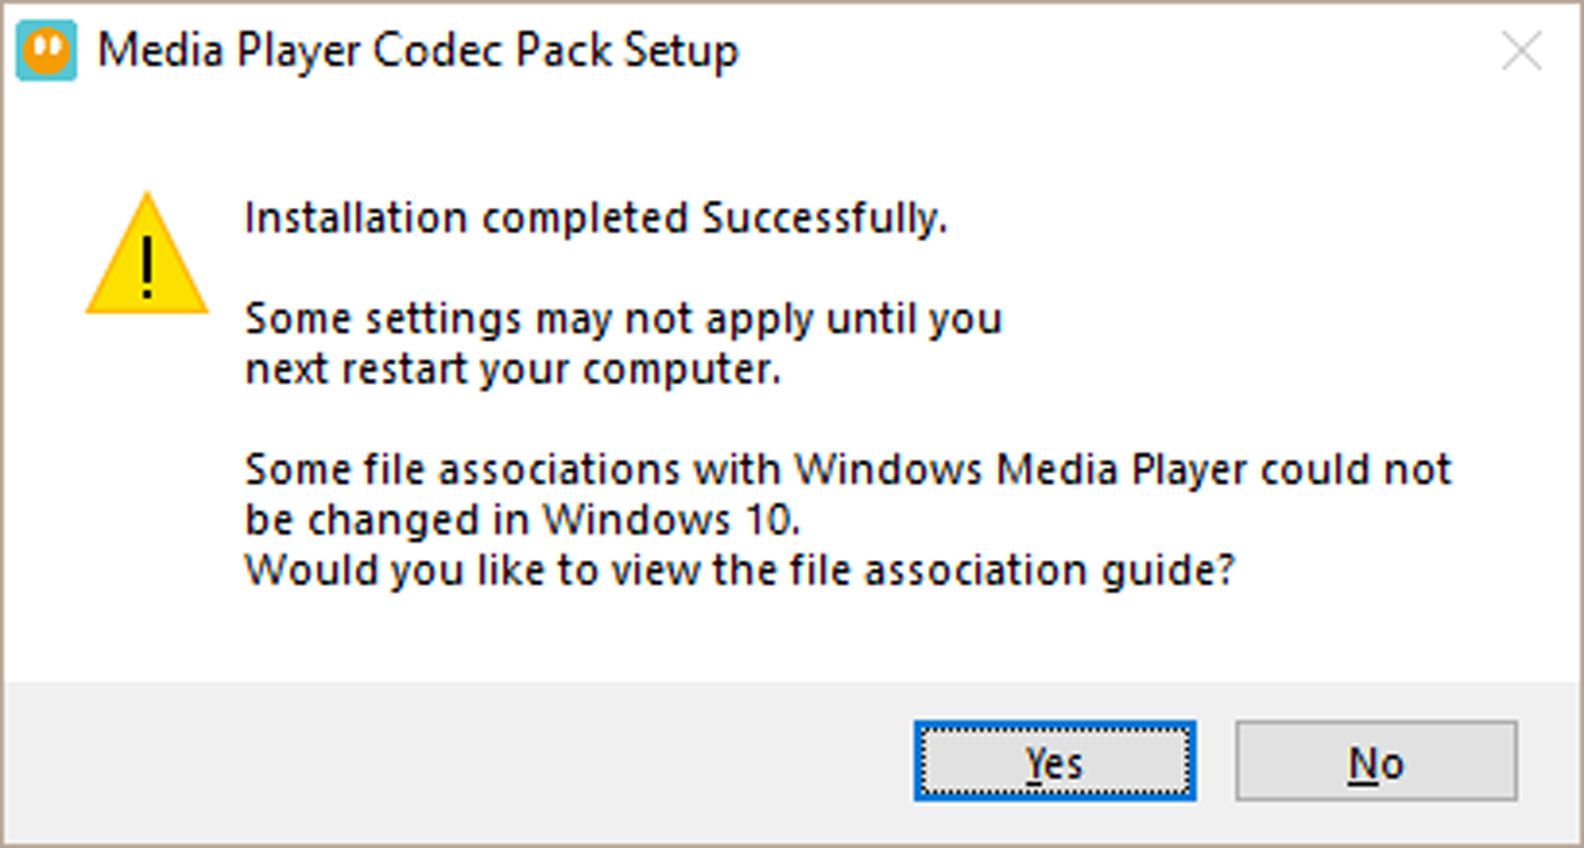 Mensagem de instalação bem-sucedida da configuração do Media Player Codec Pack